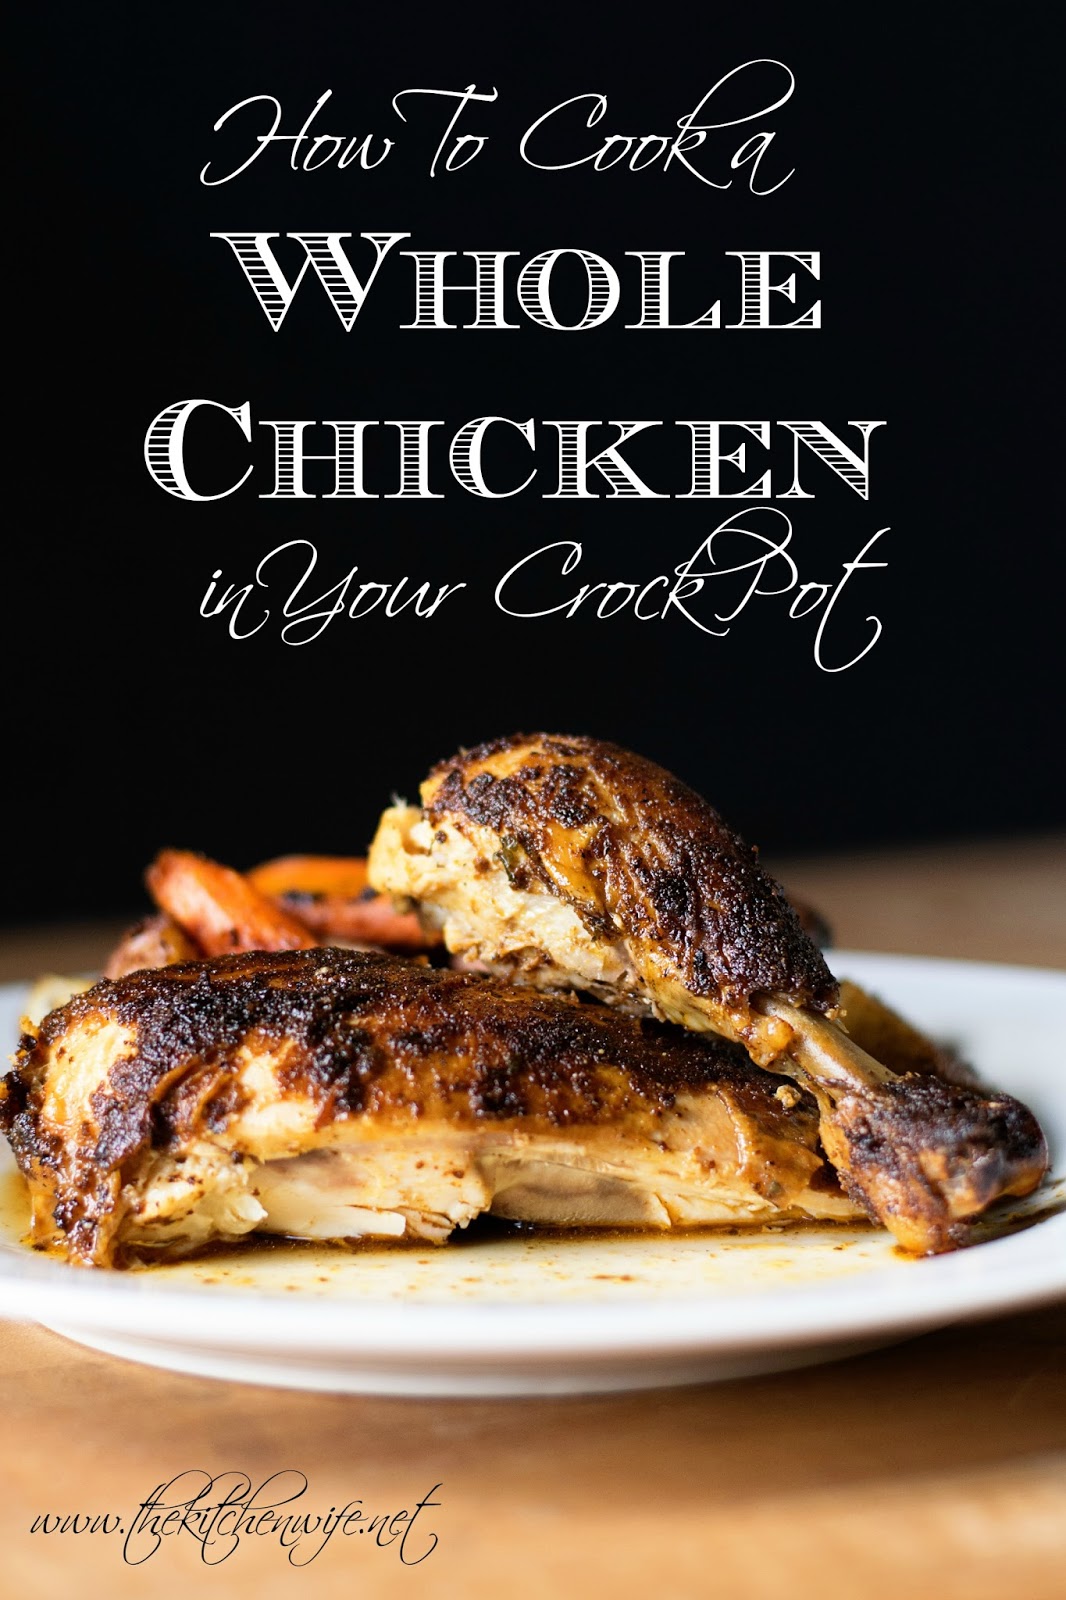 https://3.bp.blogspot.com/-N7XJxq0oKqE/ViTx1Zi0YKI/AAAAAAAAOFQ/C8EA1uykphE/s1600/Crock-Pot-Whole-Chicken.jpg